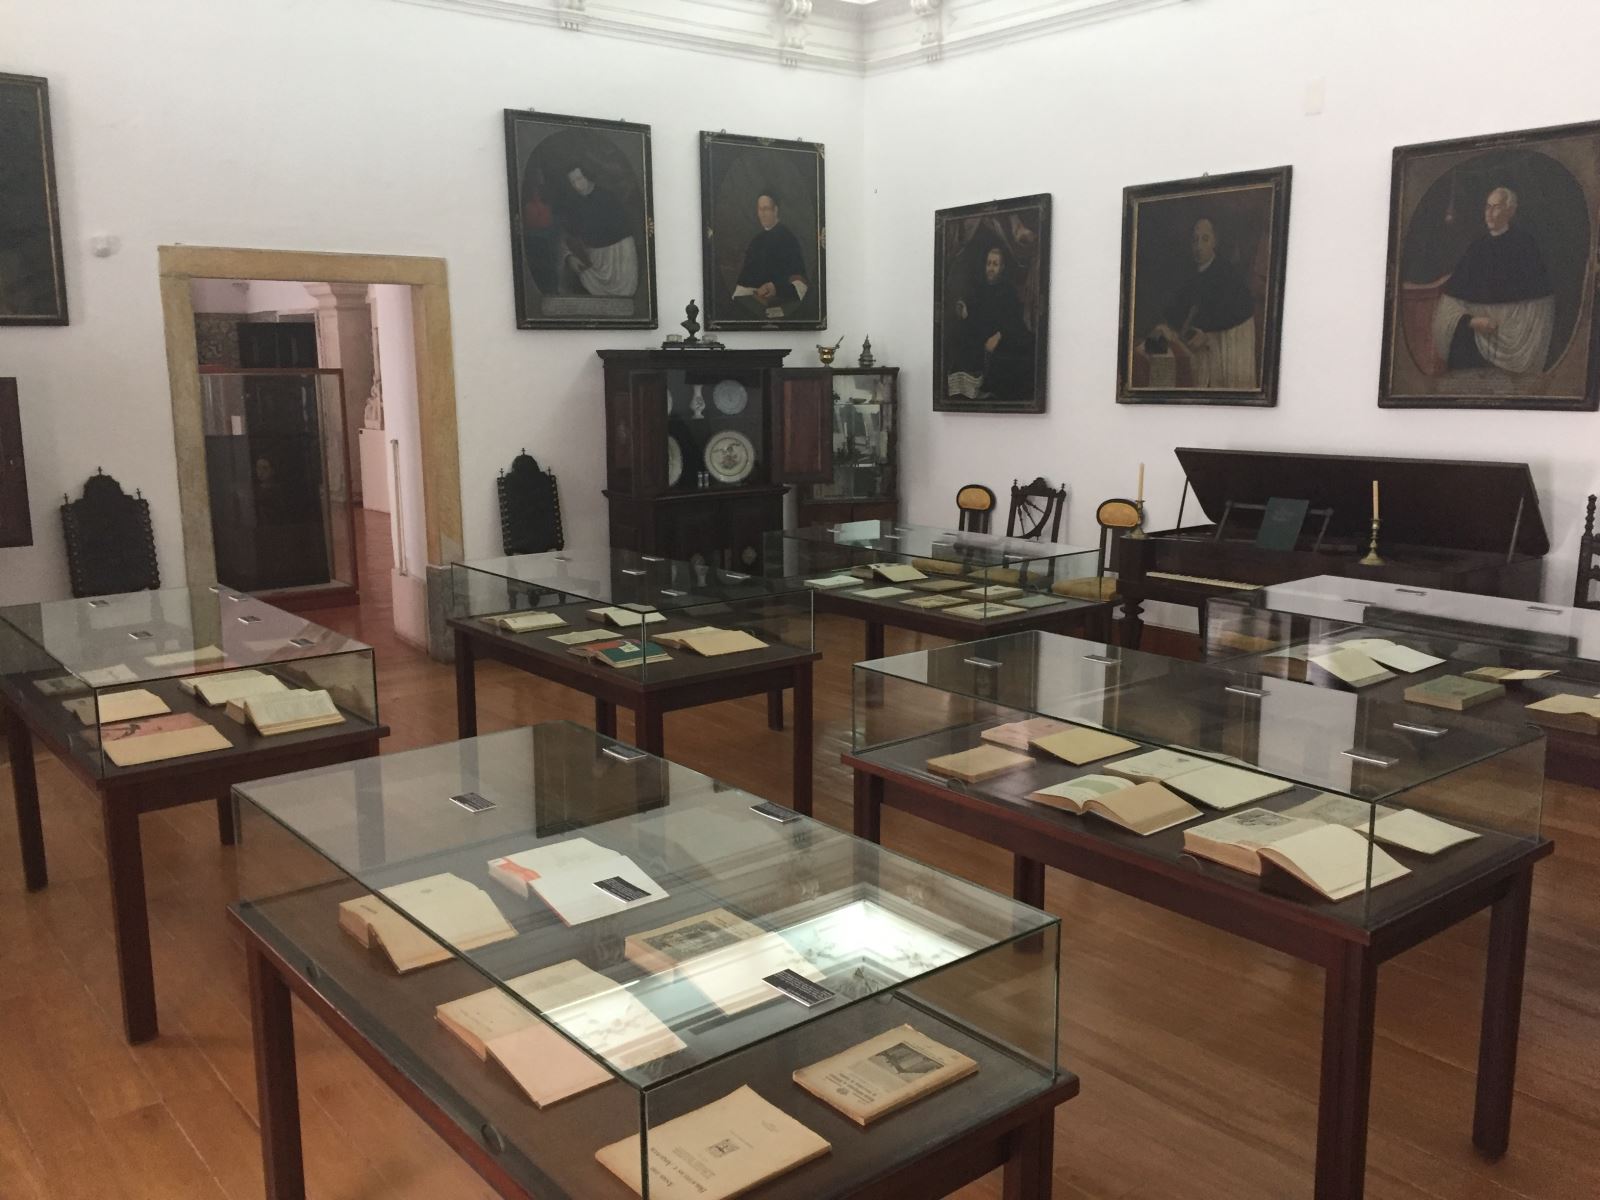  Coimbra | Exposição para dar a conhecer publicações raras